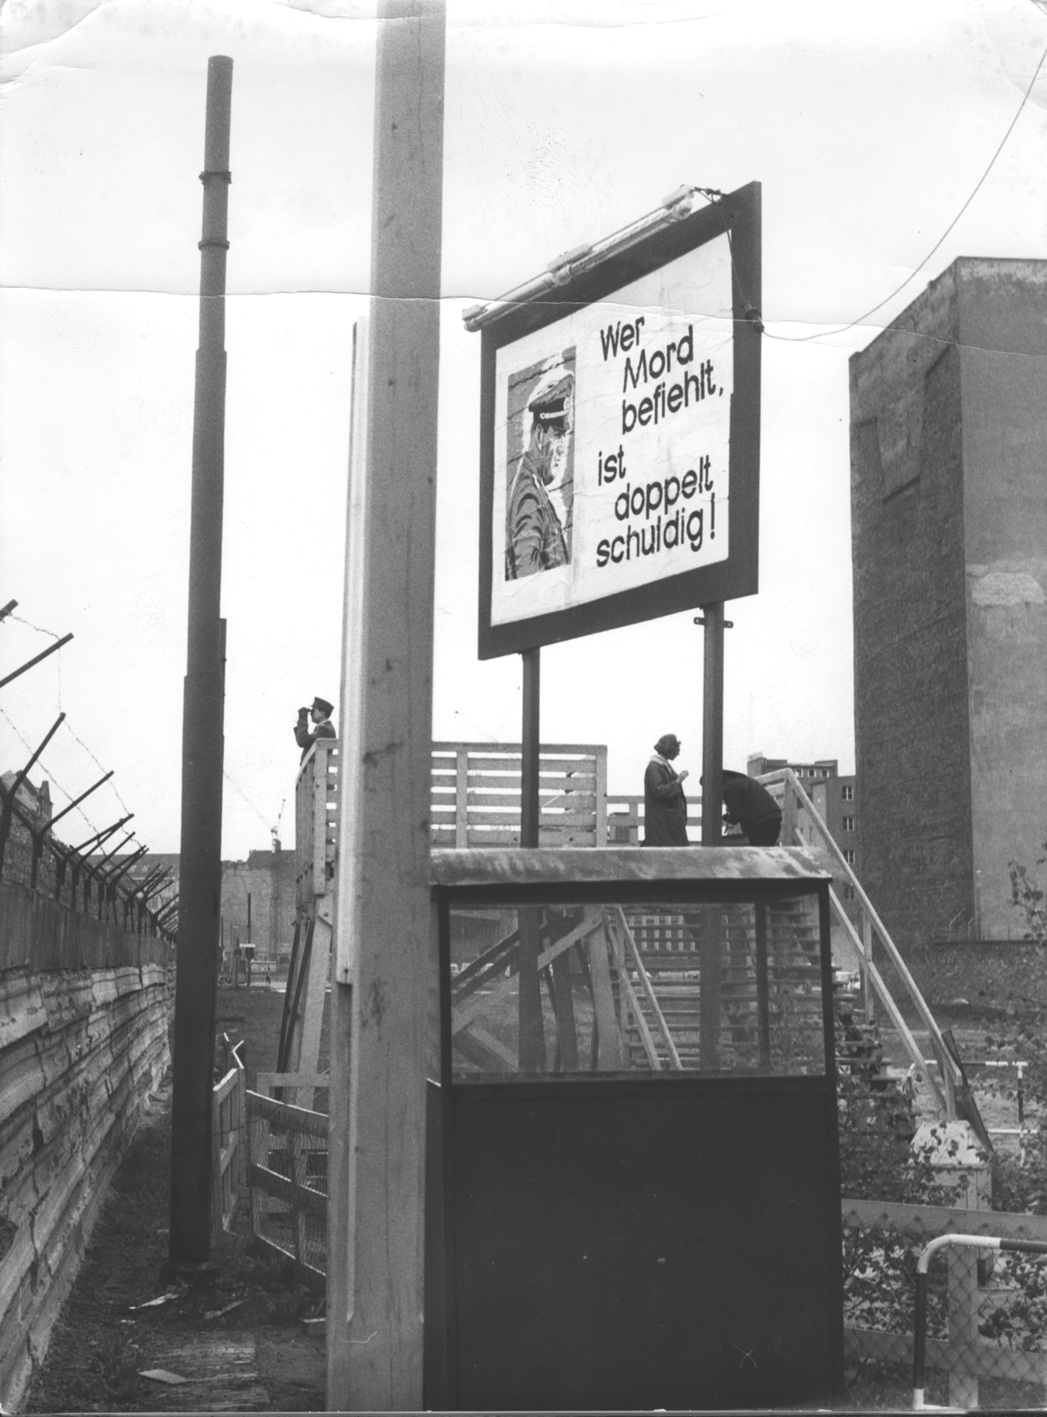 [Plakat gegen Mauerschützen, 1964]